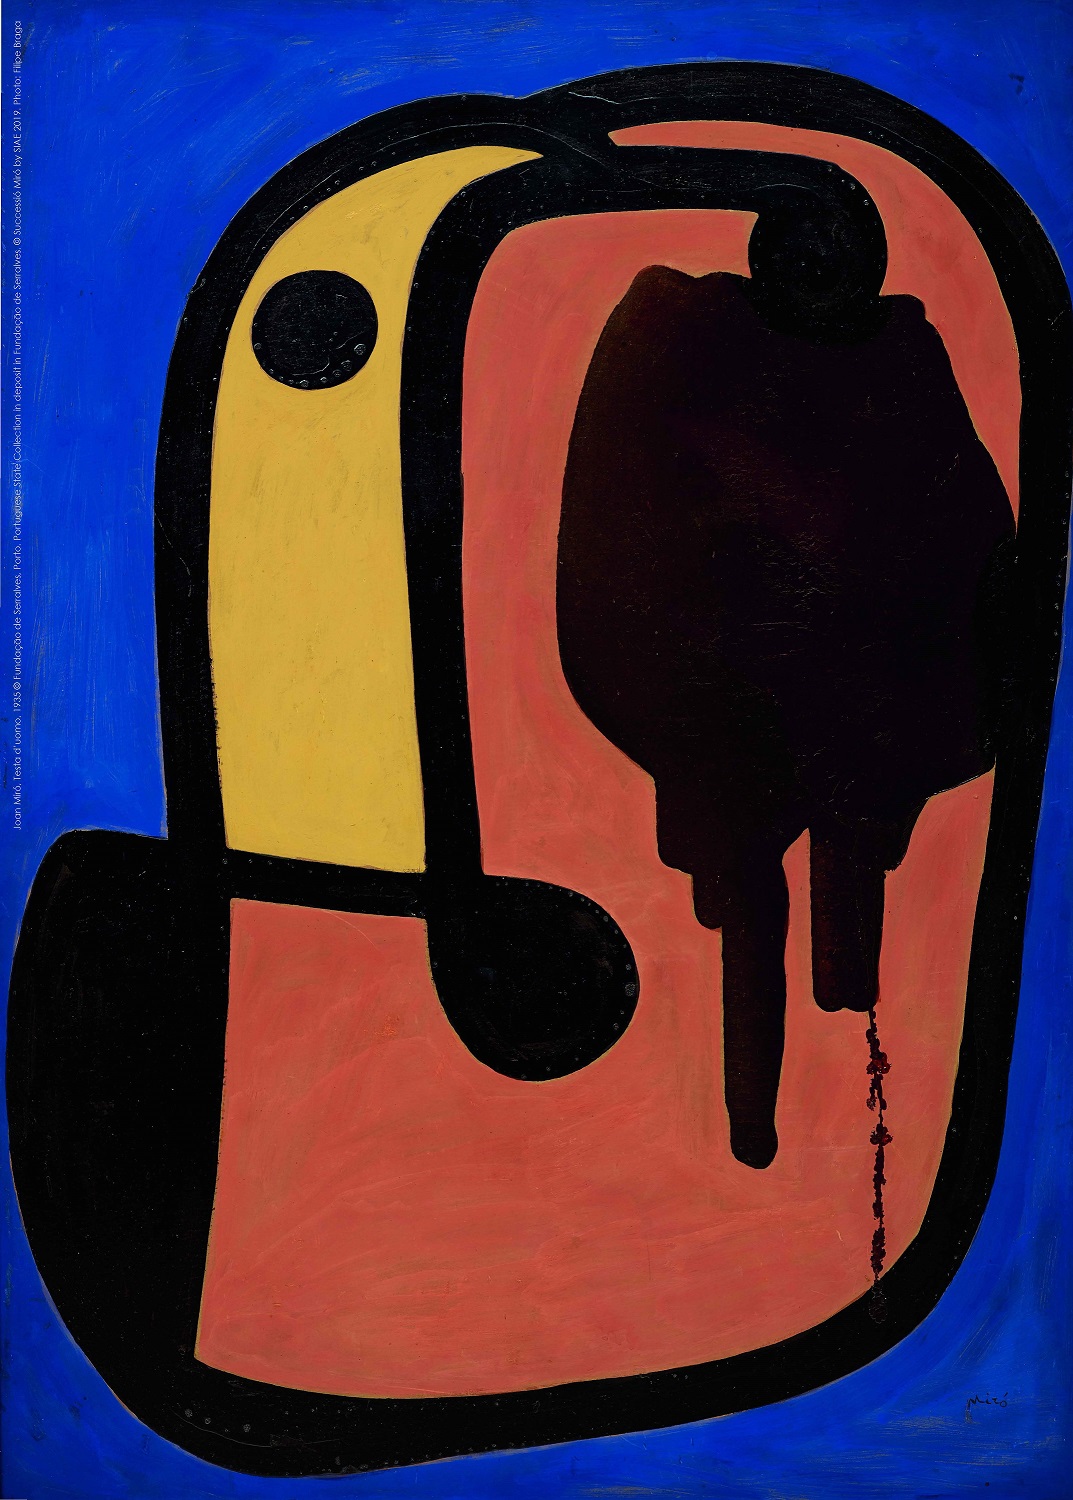 Al Pan il mondo fantastico e creativo di Joan Miró